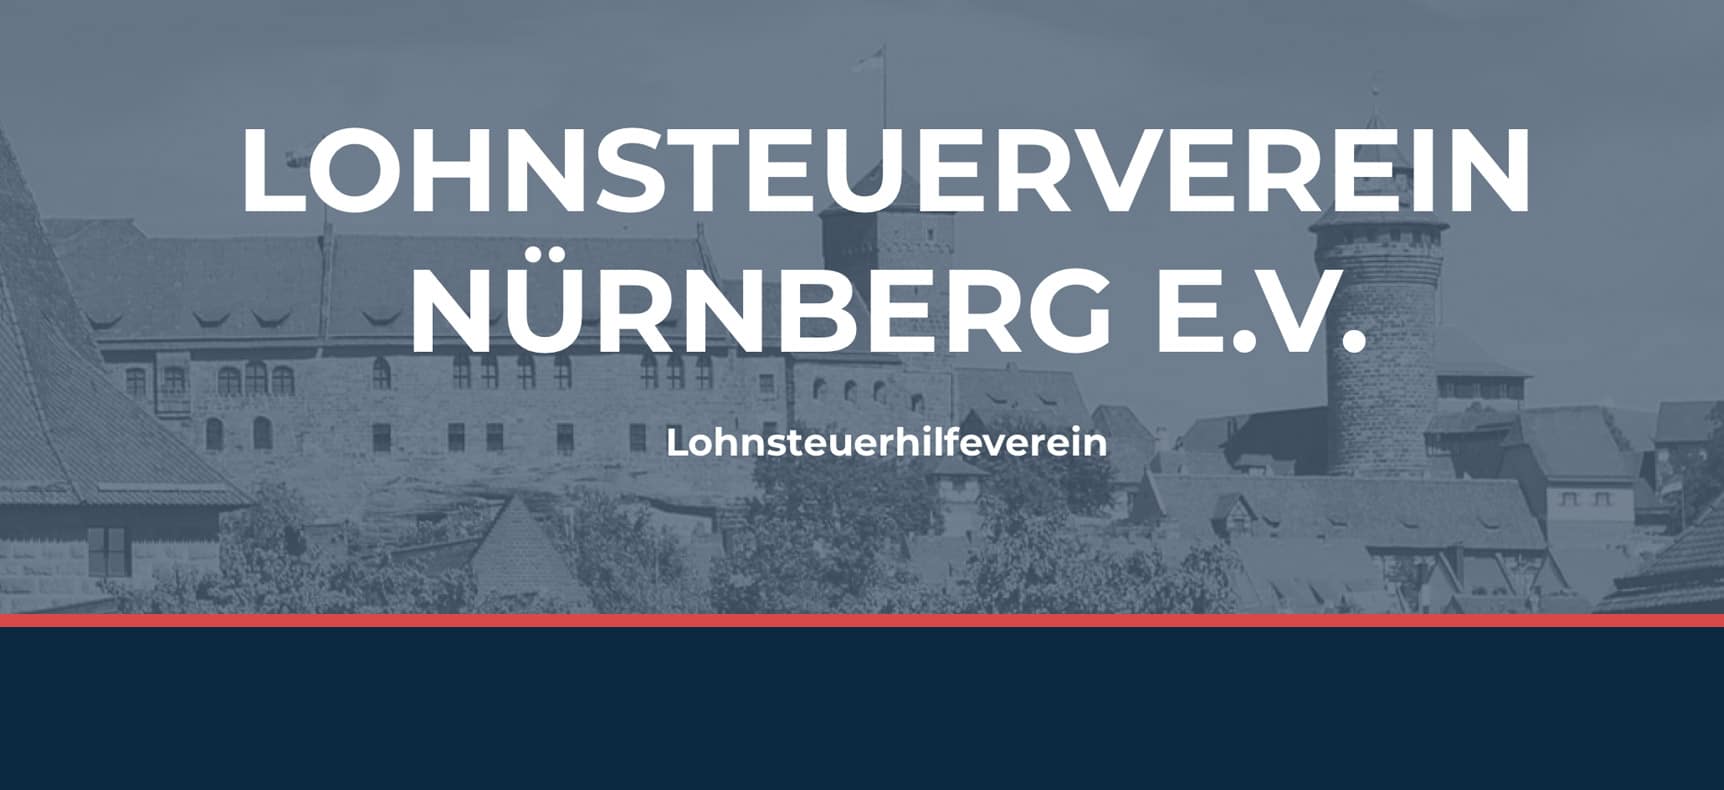 Lohnsteuerverein Nürnberg e.V. | Website erstellt von StatusZwo.com